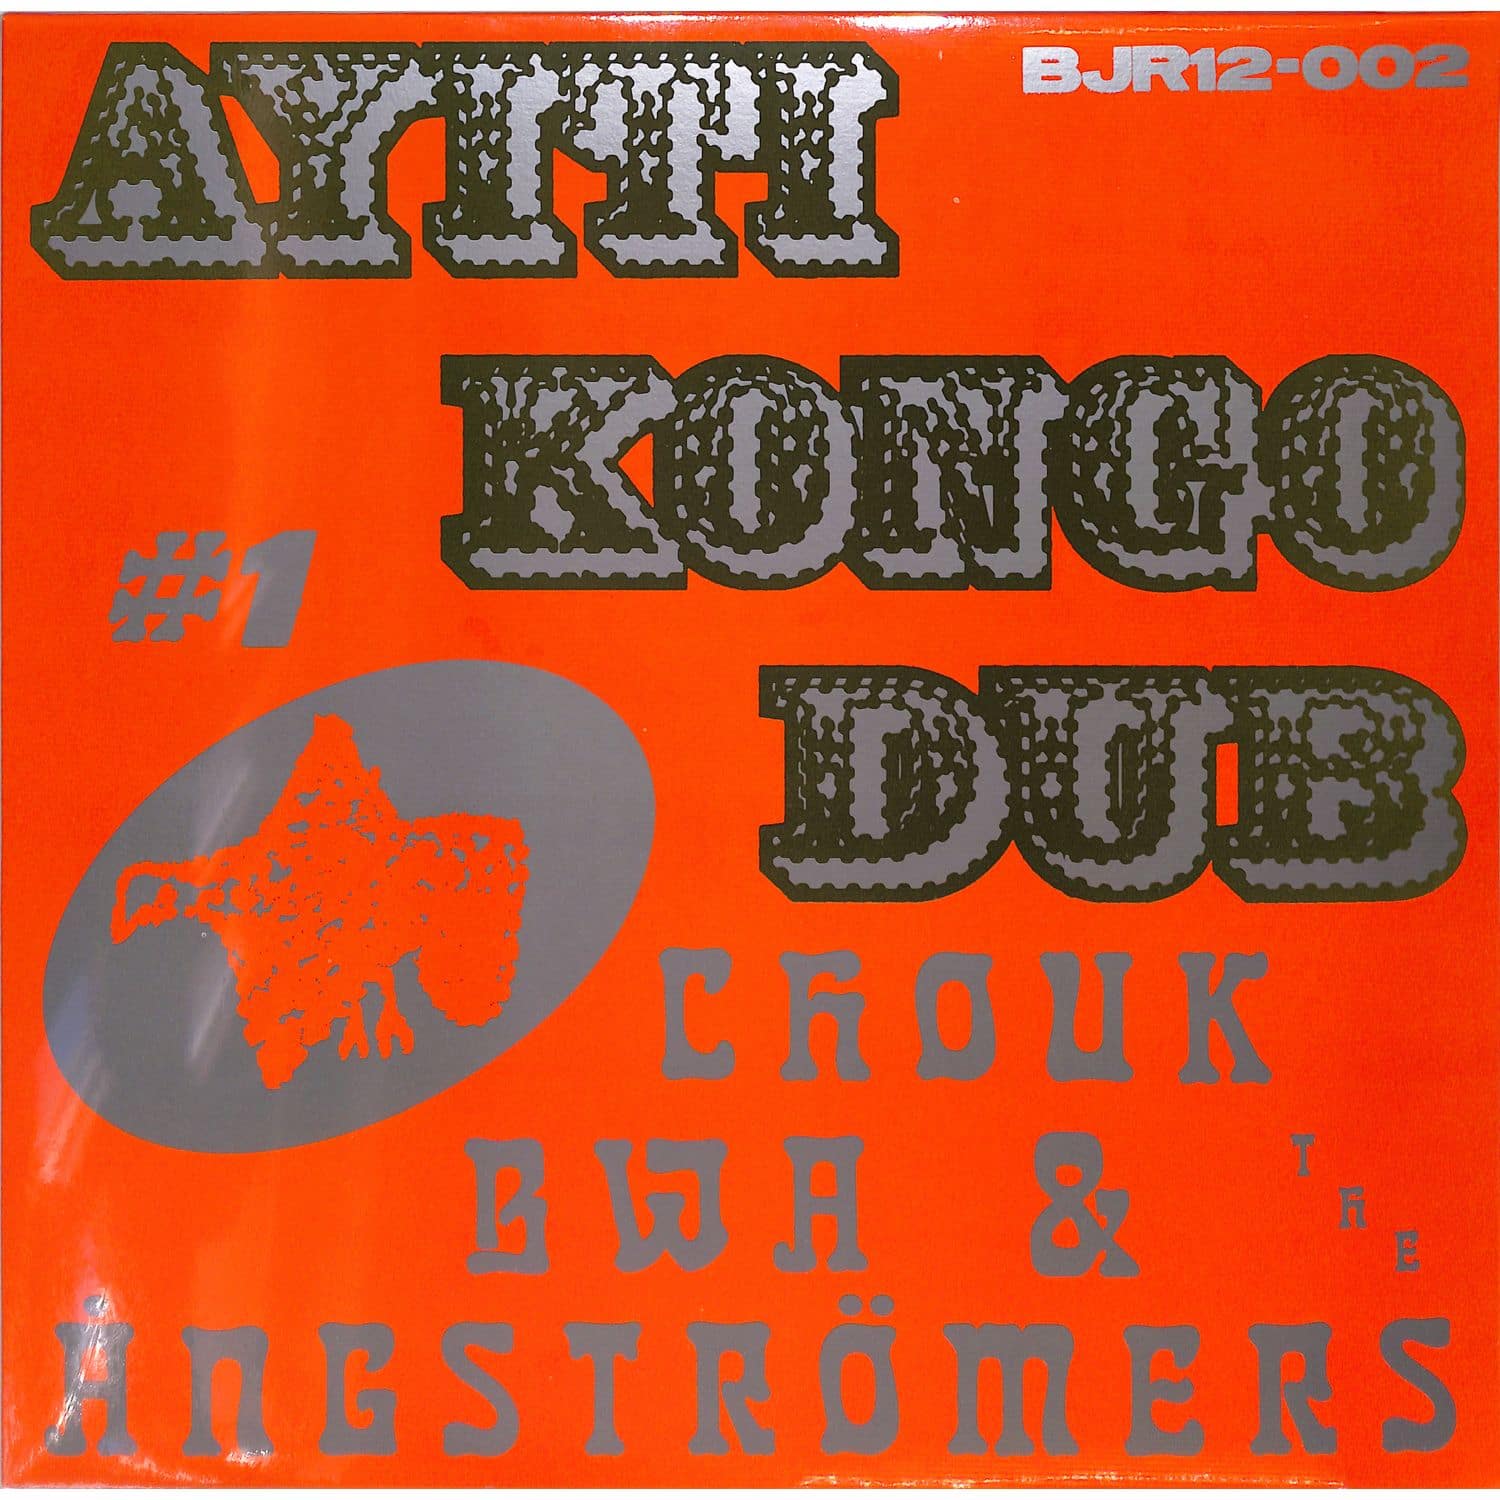 Chouk Bwa & The Angstrmers - AYITI KONGO DUB